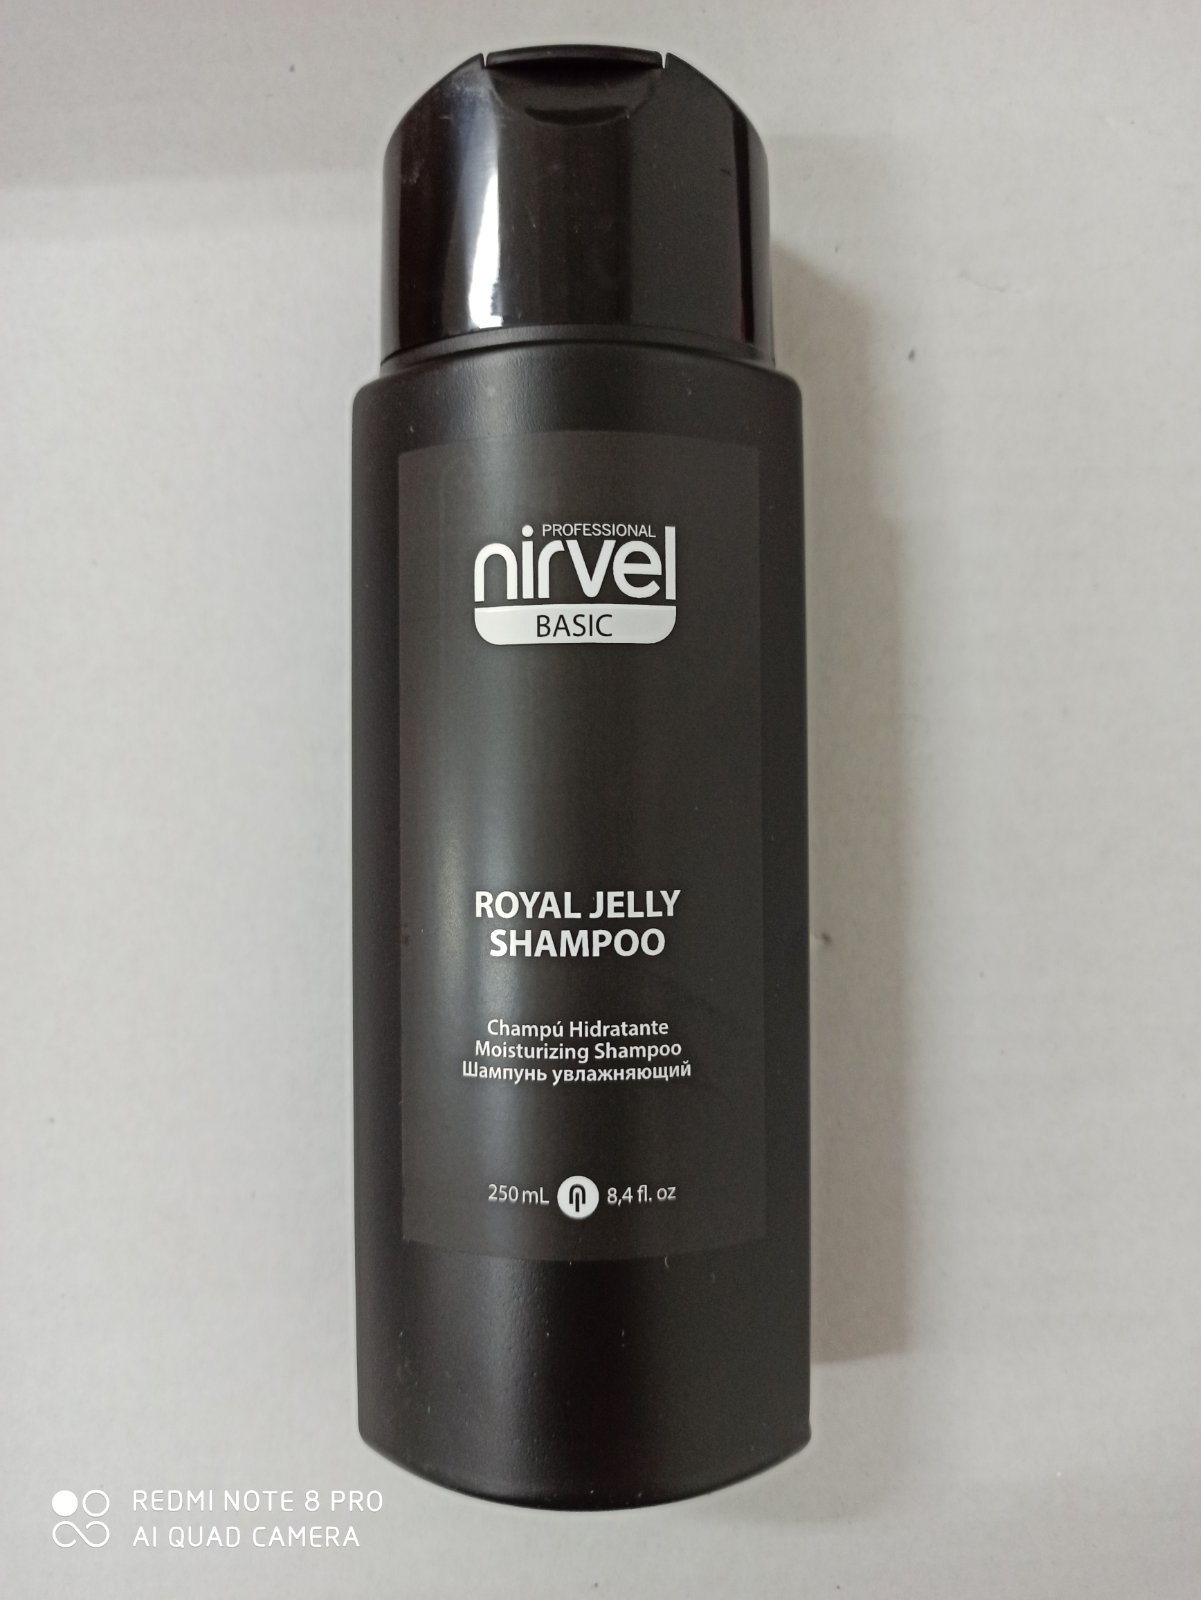 NIRVEL ROYAL JELLY vyživujúci šampón s materskou kašičku (250ml)